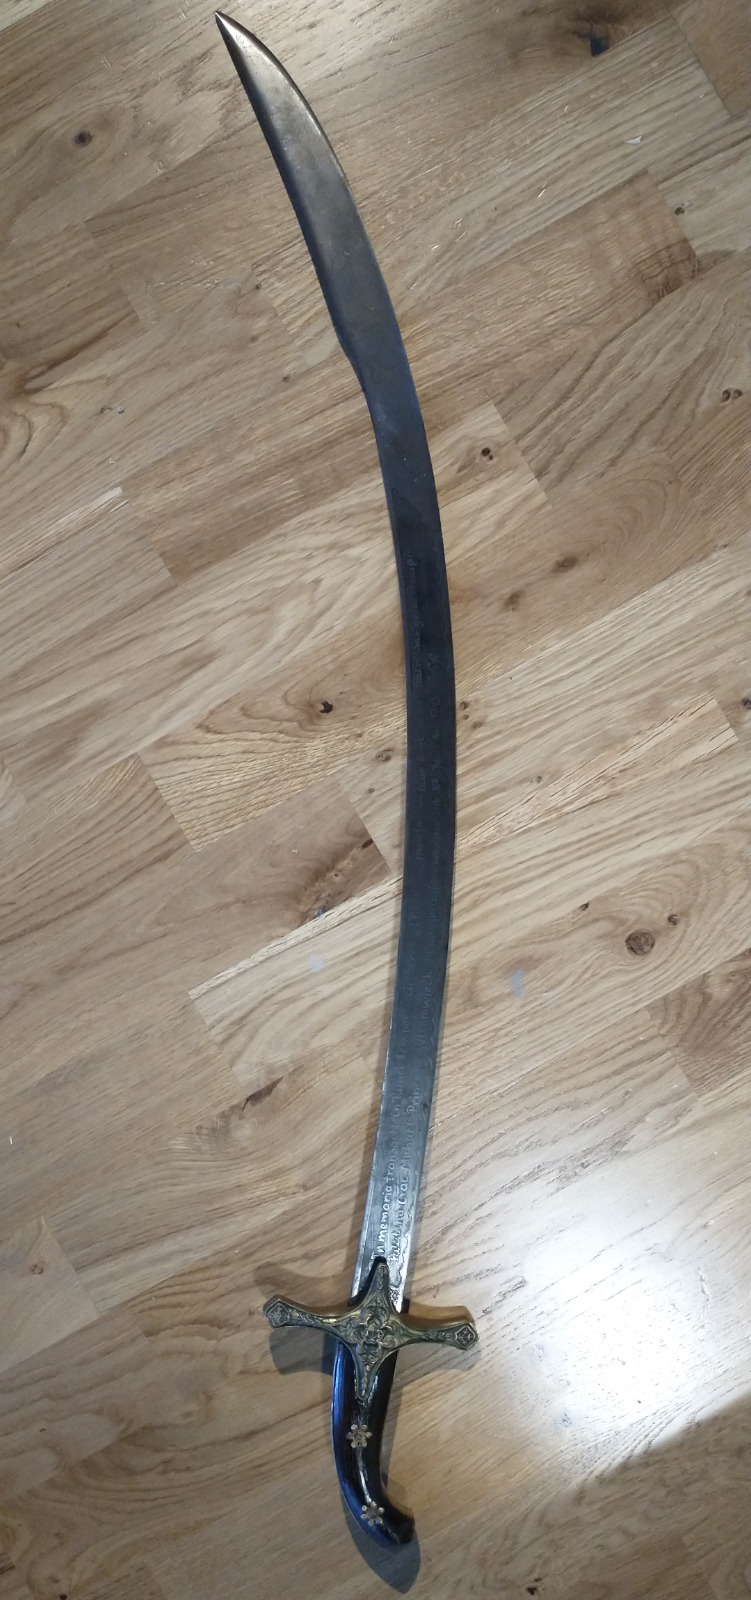 Polish Karabela Sword / Scimitar / Saber / Old Vintage